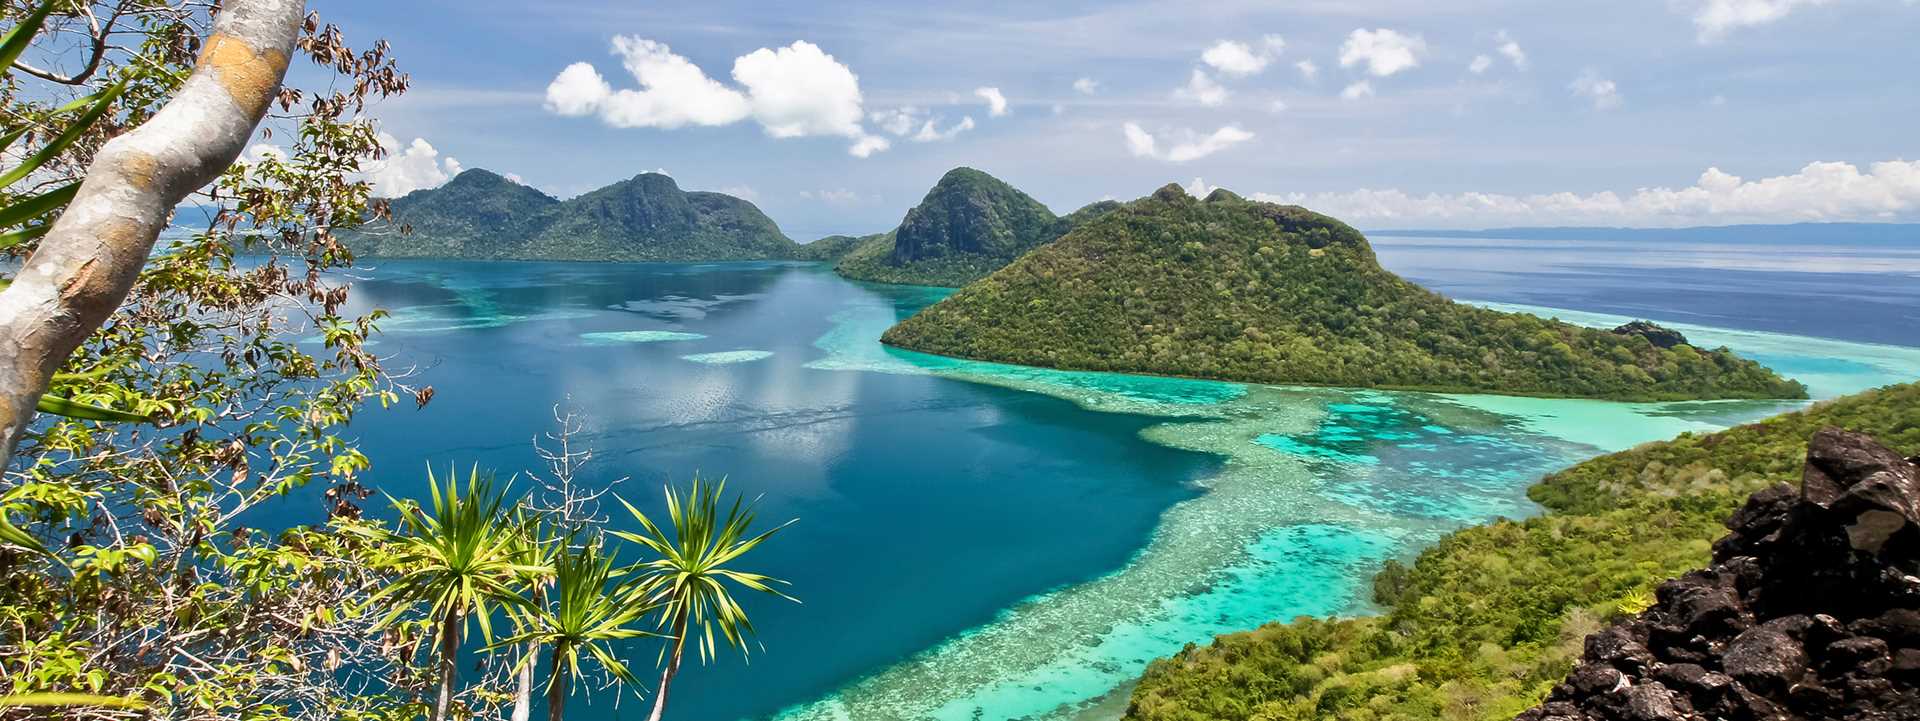 تعرفوا على أجمل الجزر في ماليزيا وأفضل فنادقها الموصى بها 